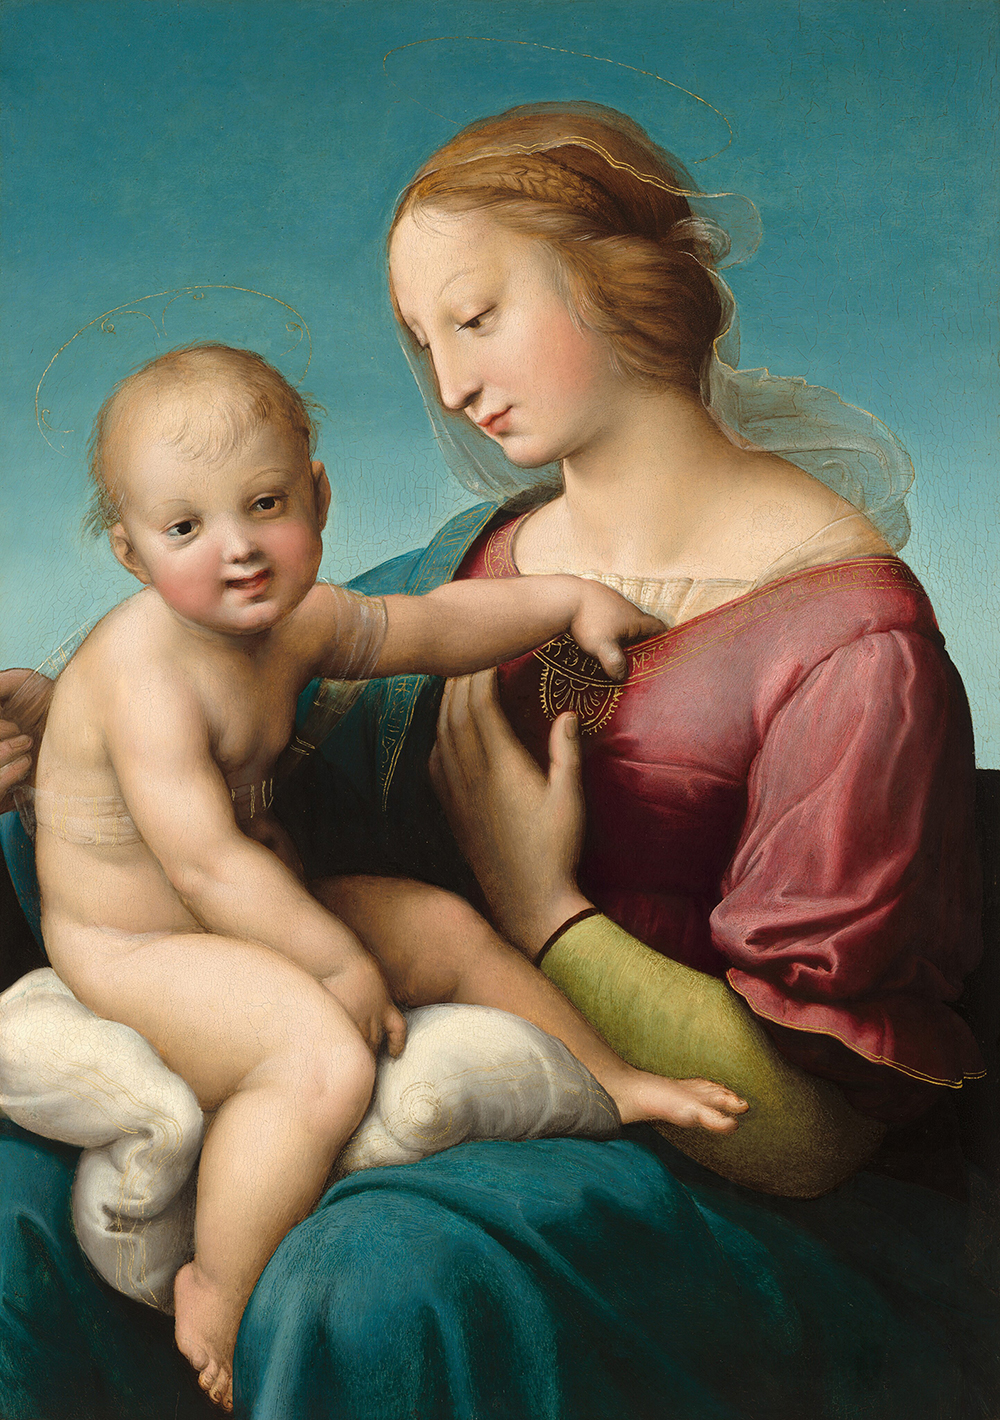 Une femme tient et regarde vers un jeune enfant nu, qui est assis sur ses genoux et nous regarde en souriant, dans cette peinture verticale.